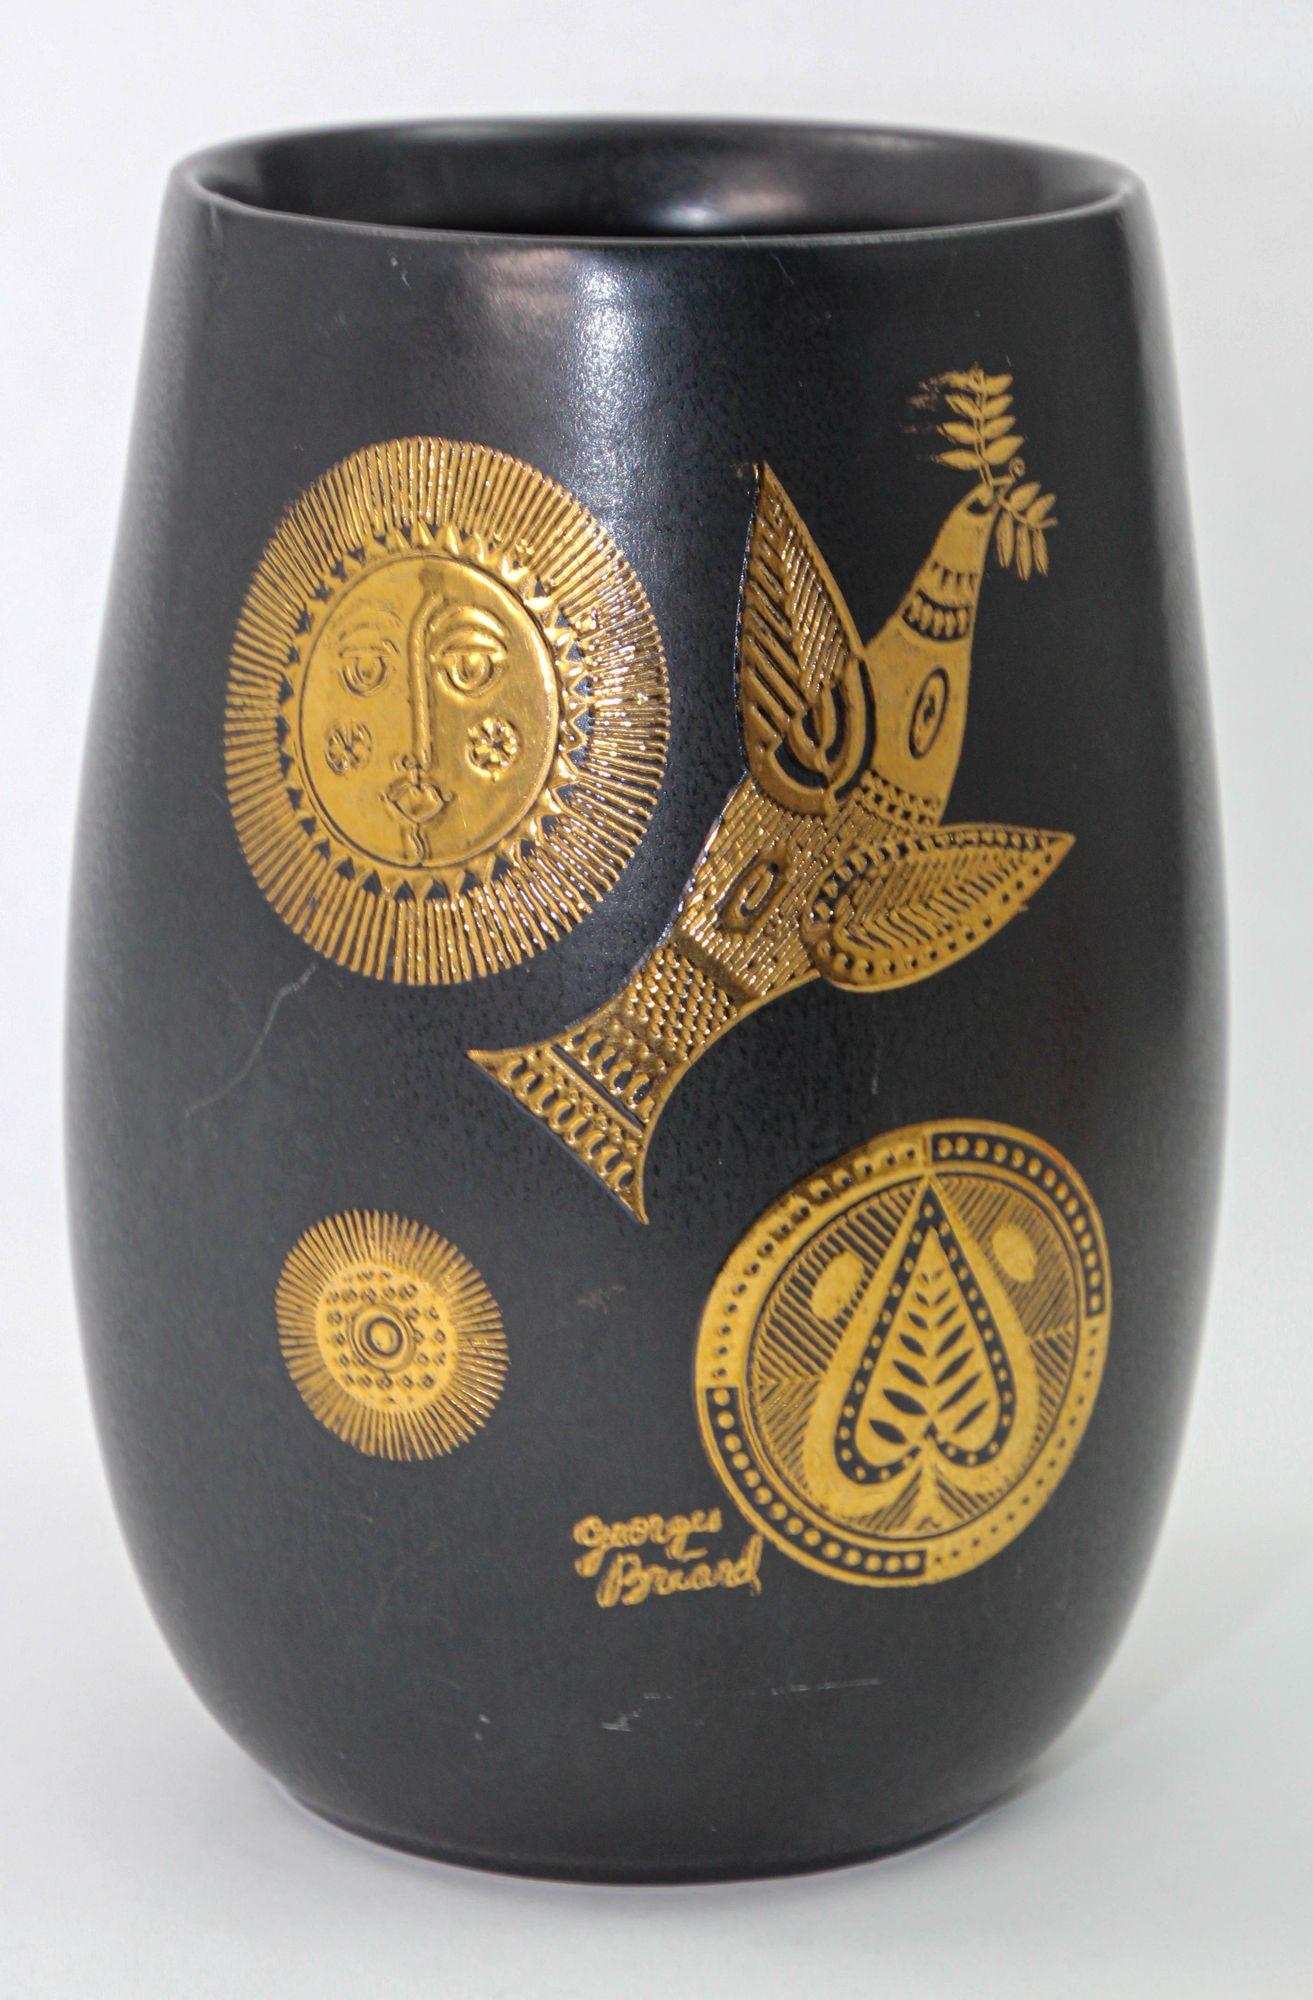 Vase en céramique noir mat incrusté d'or par Georges Briard pour Hyalyn Pottery, États-Unis, années 1960.
Signé GEORGES BRIARD sur le devant du vase, le motif est sculpté dans la céramique et peint à l'or 22 carats.
L'oiseau avec la branche